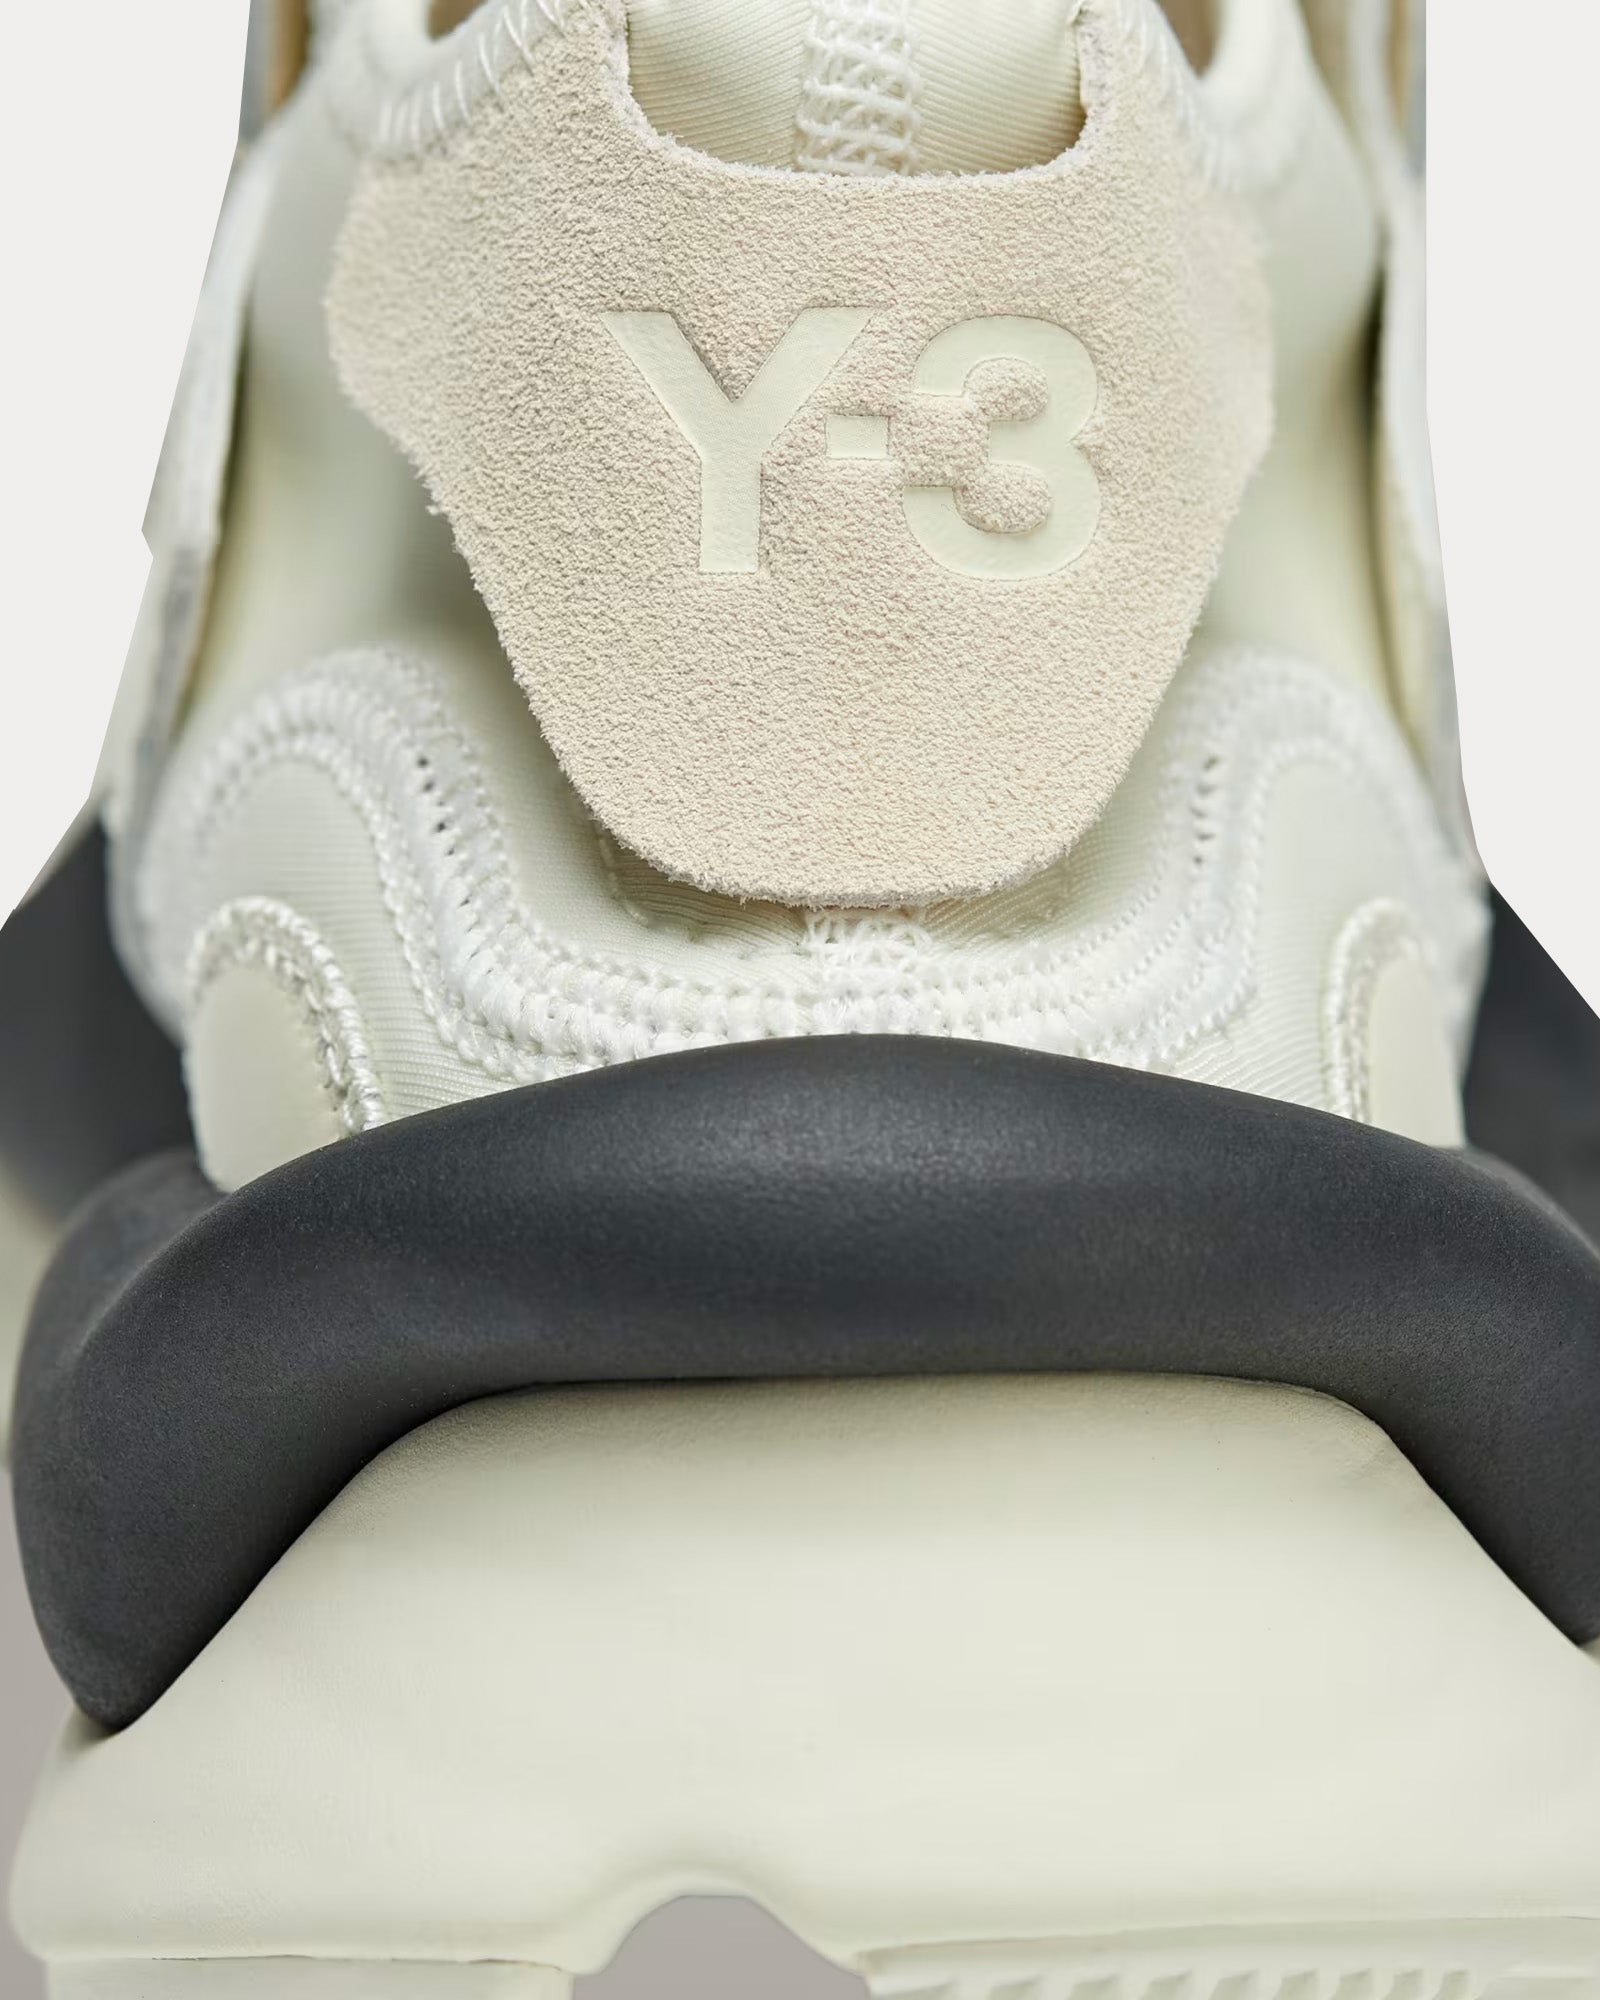 Y-3 - Kaiwa Cream White / Off White / Black Mid Top Sneakers